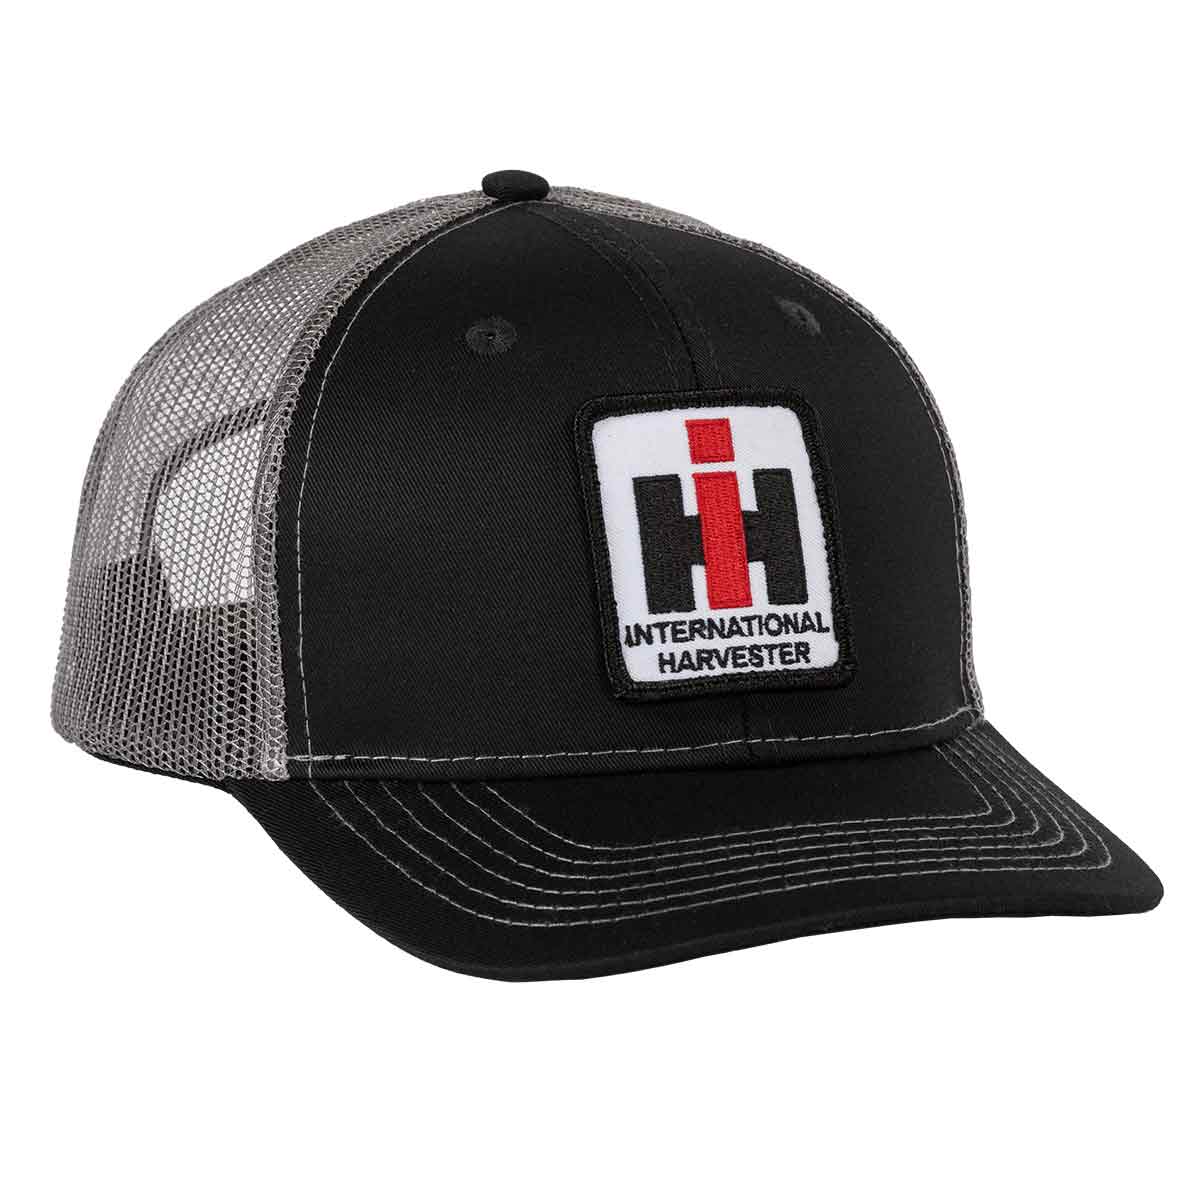 International Harvester Hat, Black with Grey Mesh Back